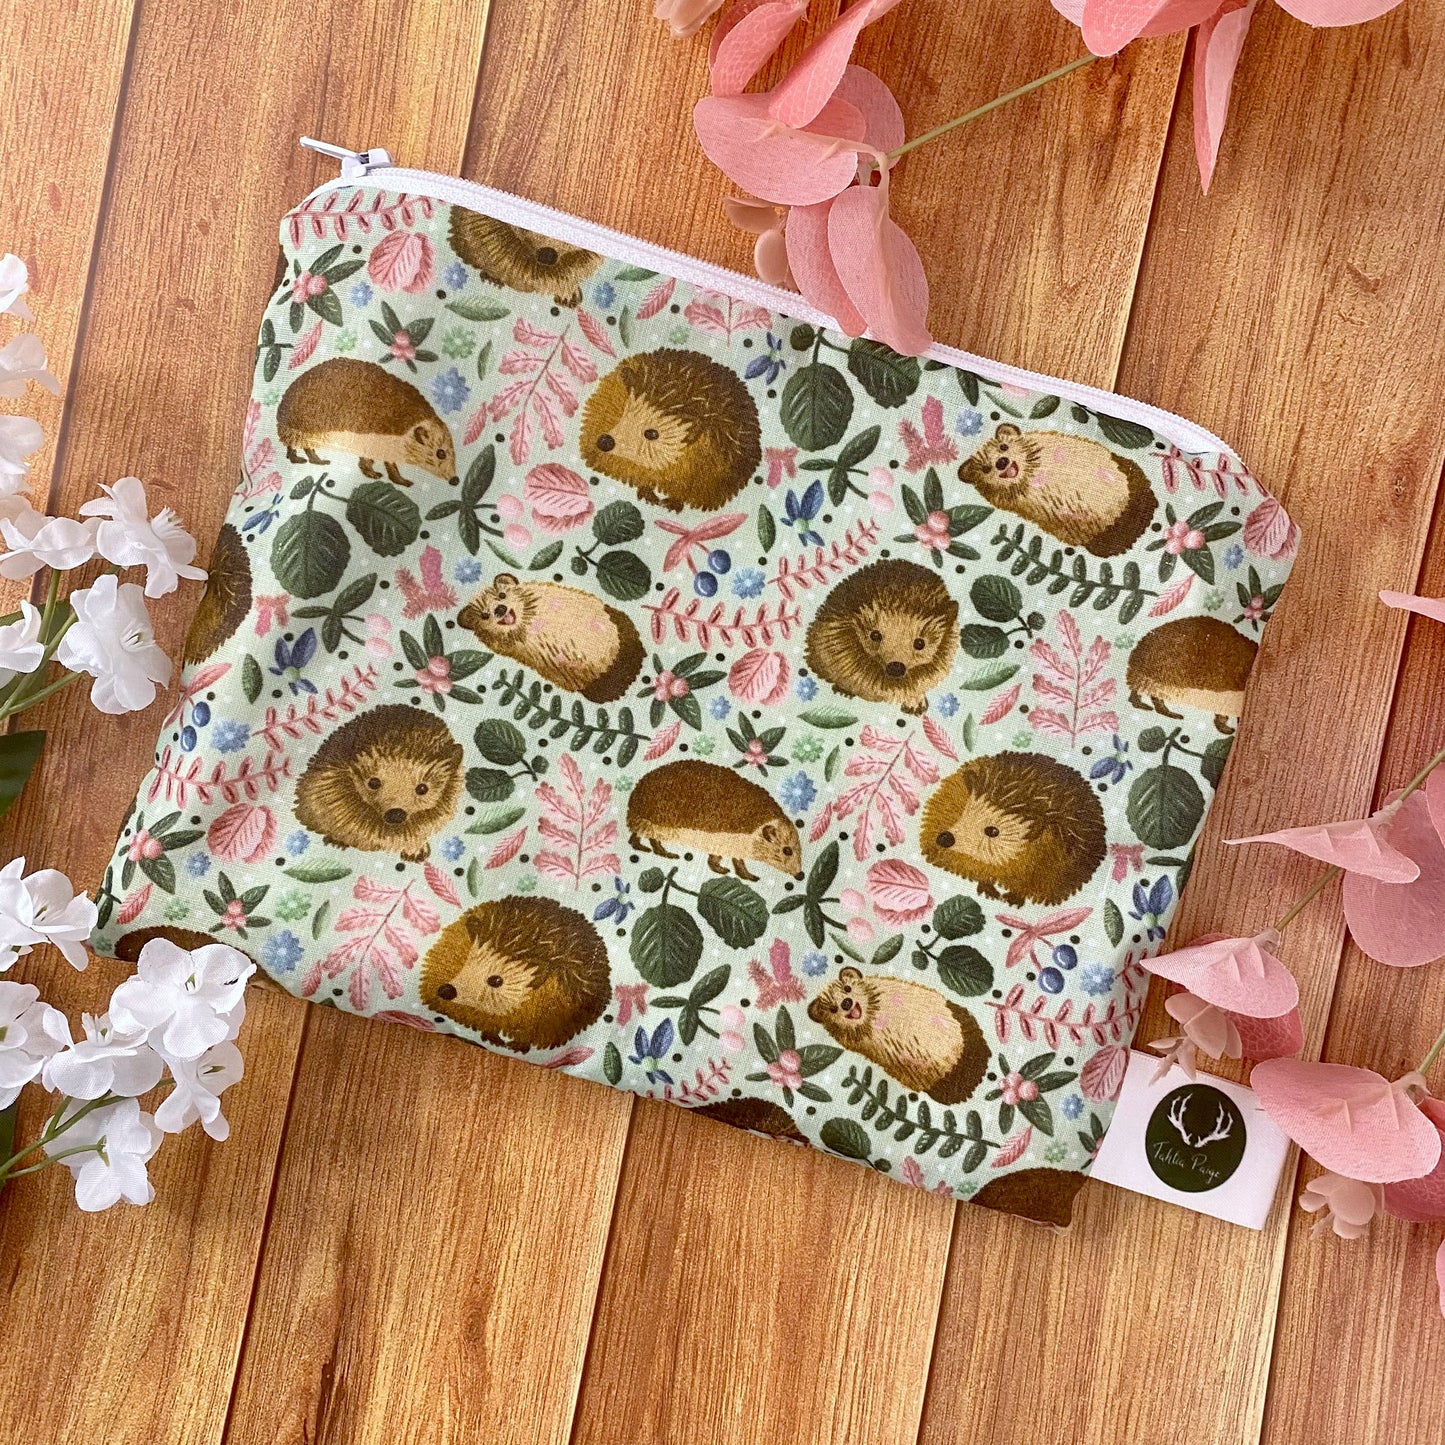 hedgehog patterned storage bag for handbag, ideal as a hedgehog gift for a hedgehog lover